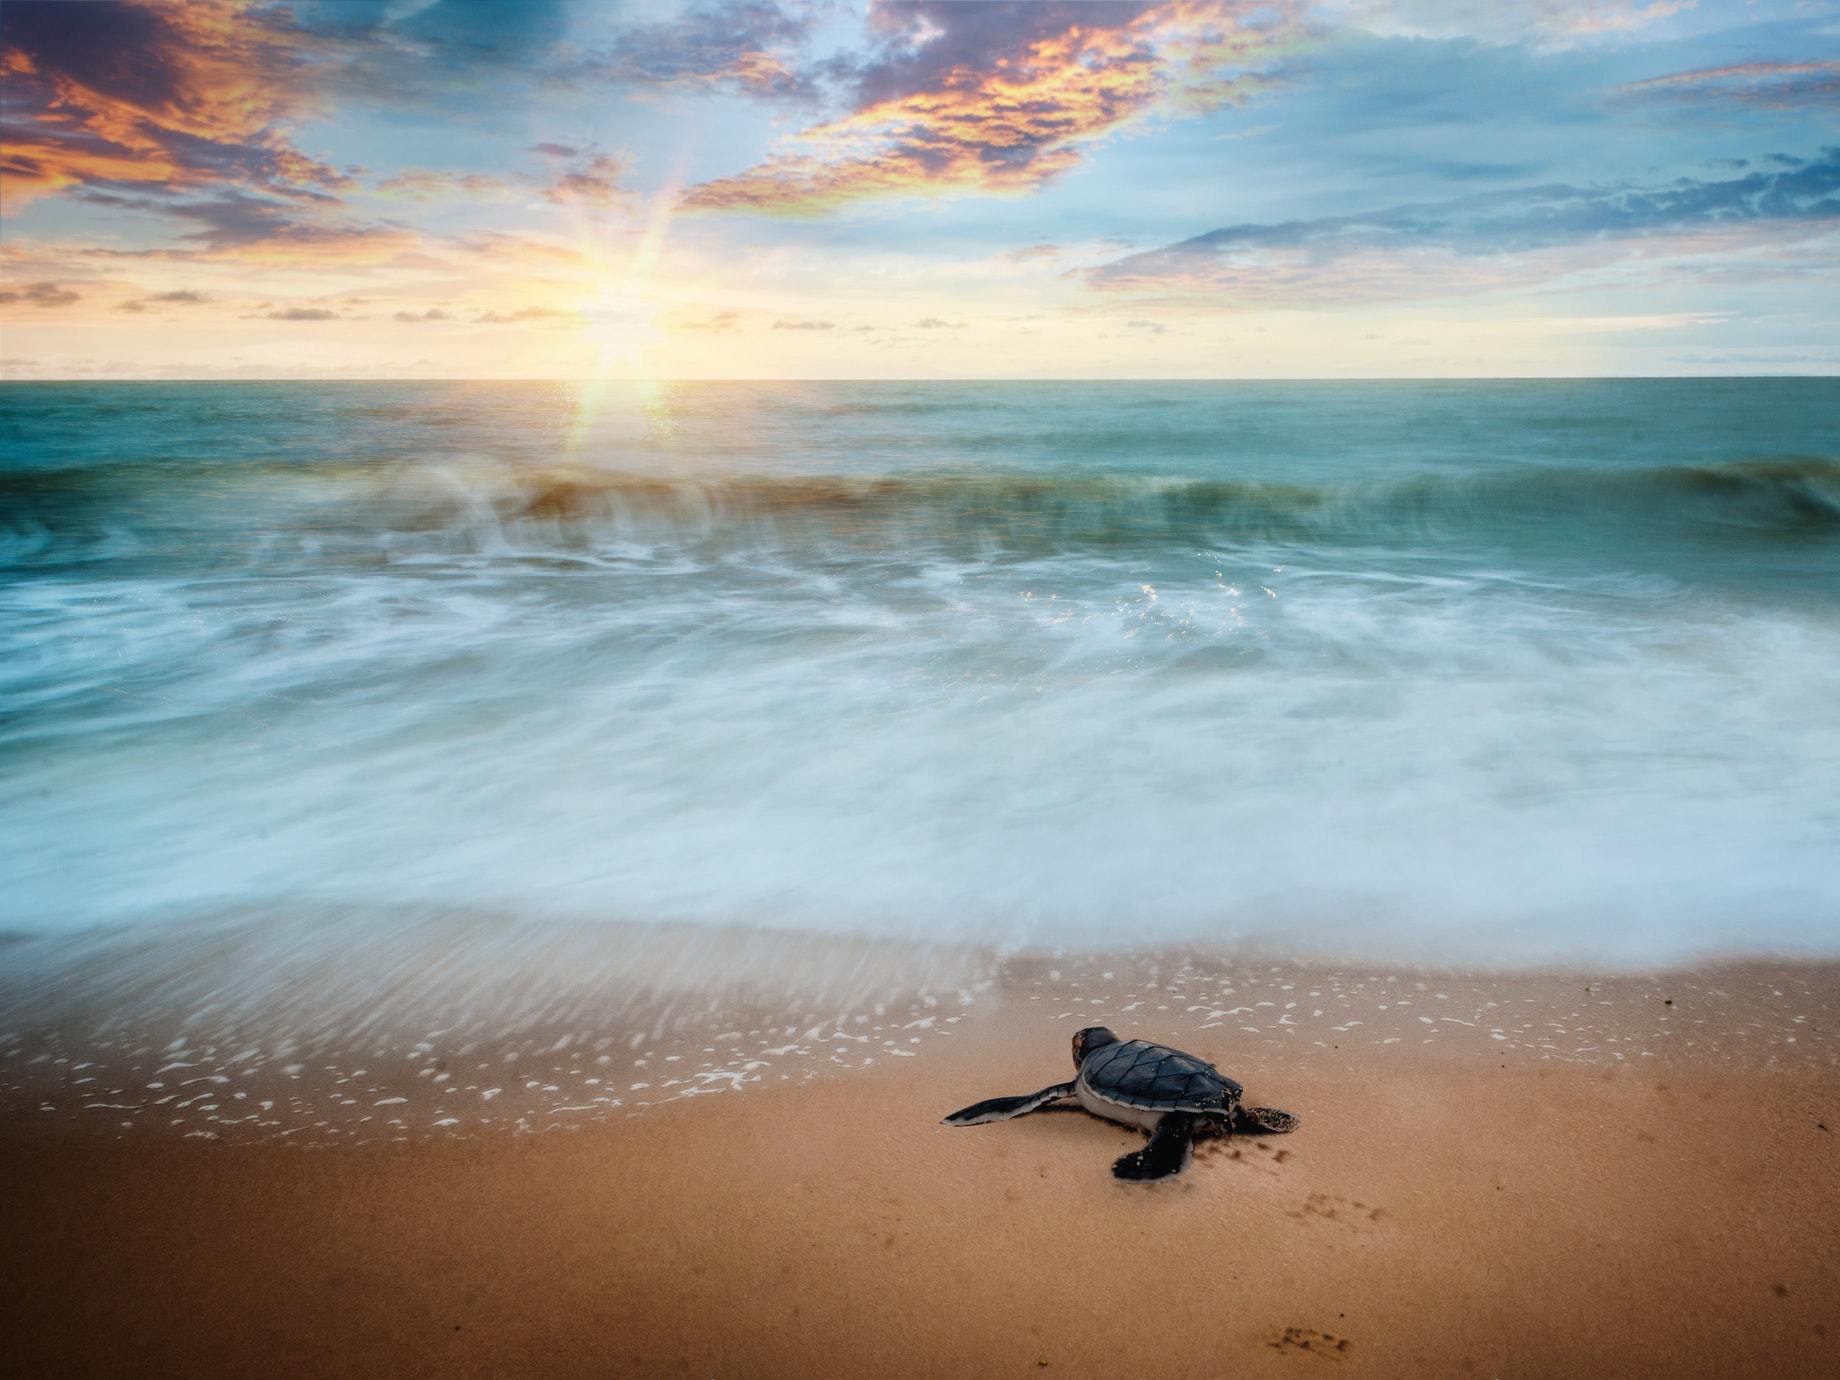 焦慮爆棚的你，聽聽海龜給你的建議：都徜徉在汪洋了，何妨快樂一點？